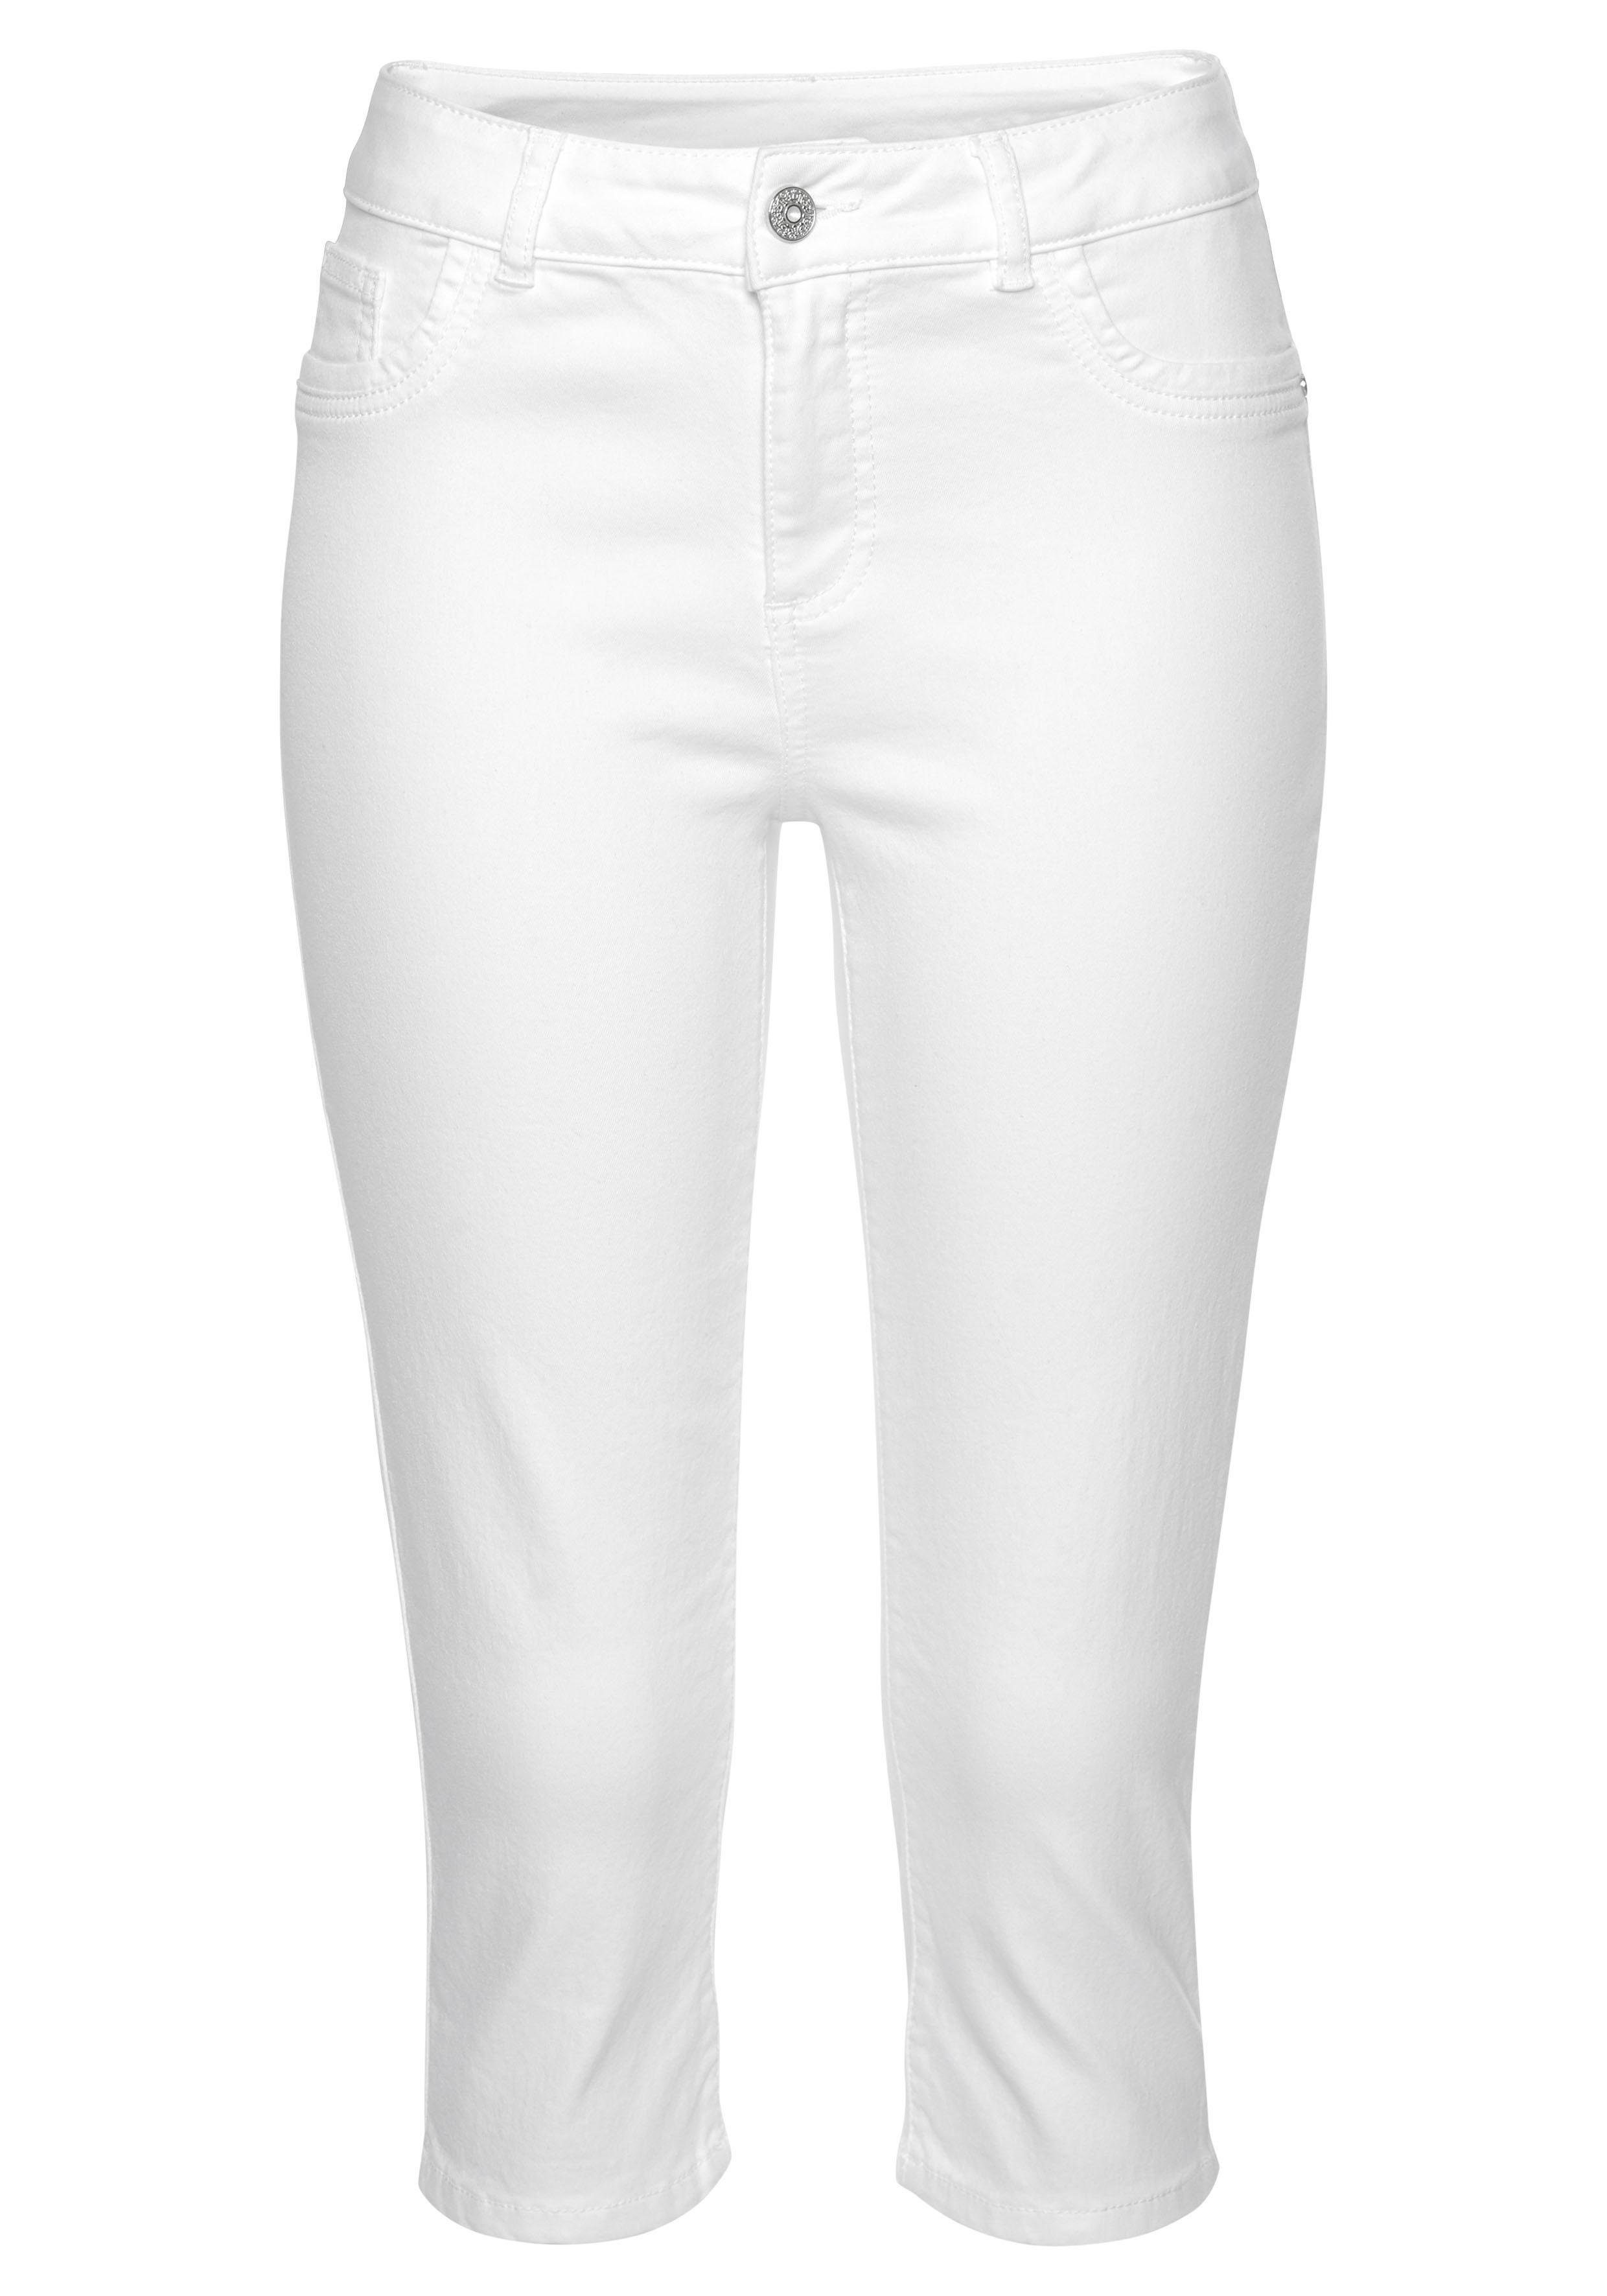 Weiße Caprihosen für Damen kaufen » Weiße 3/4 Hosen | OTTO